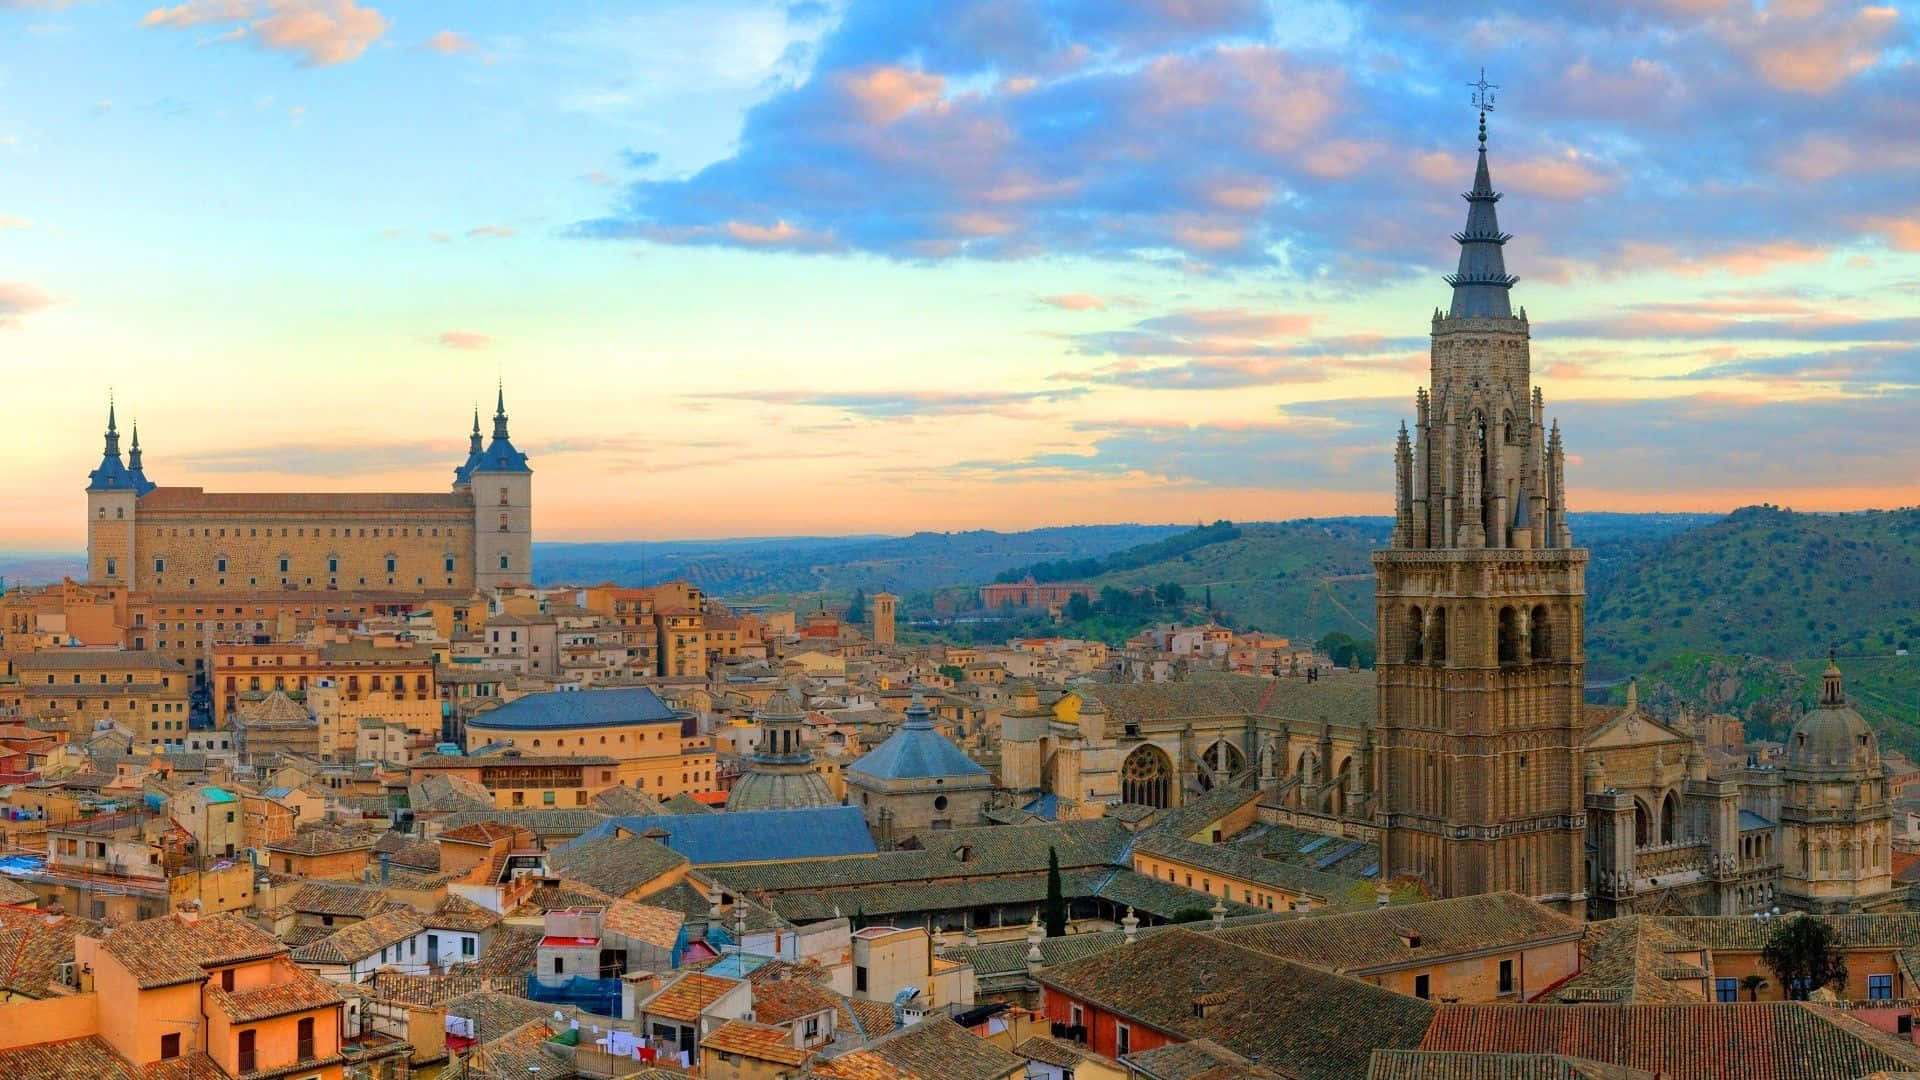 "Amazed by Spain's Beauty"